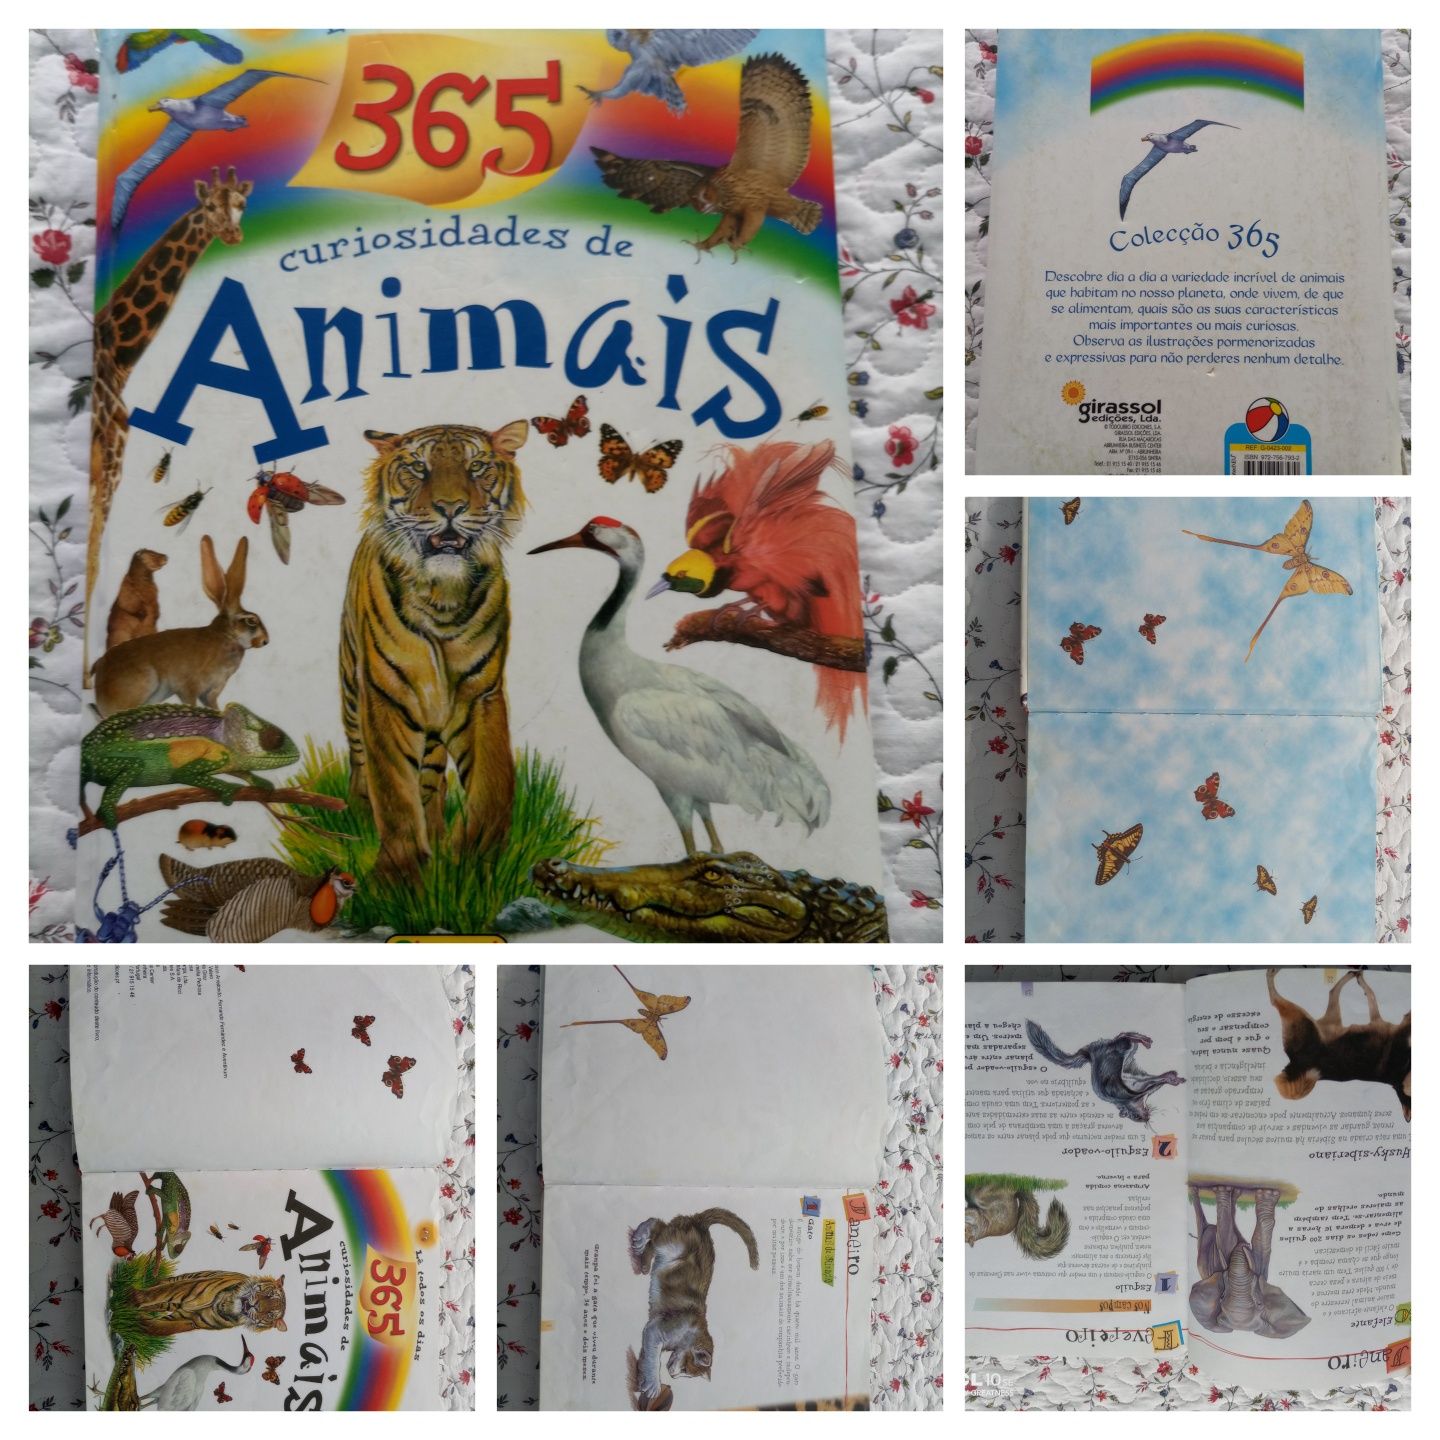 Livro "365 curiosidades de animais"